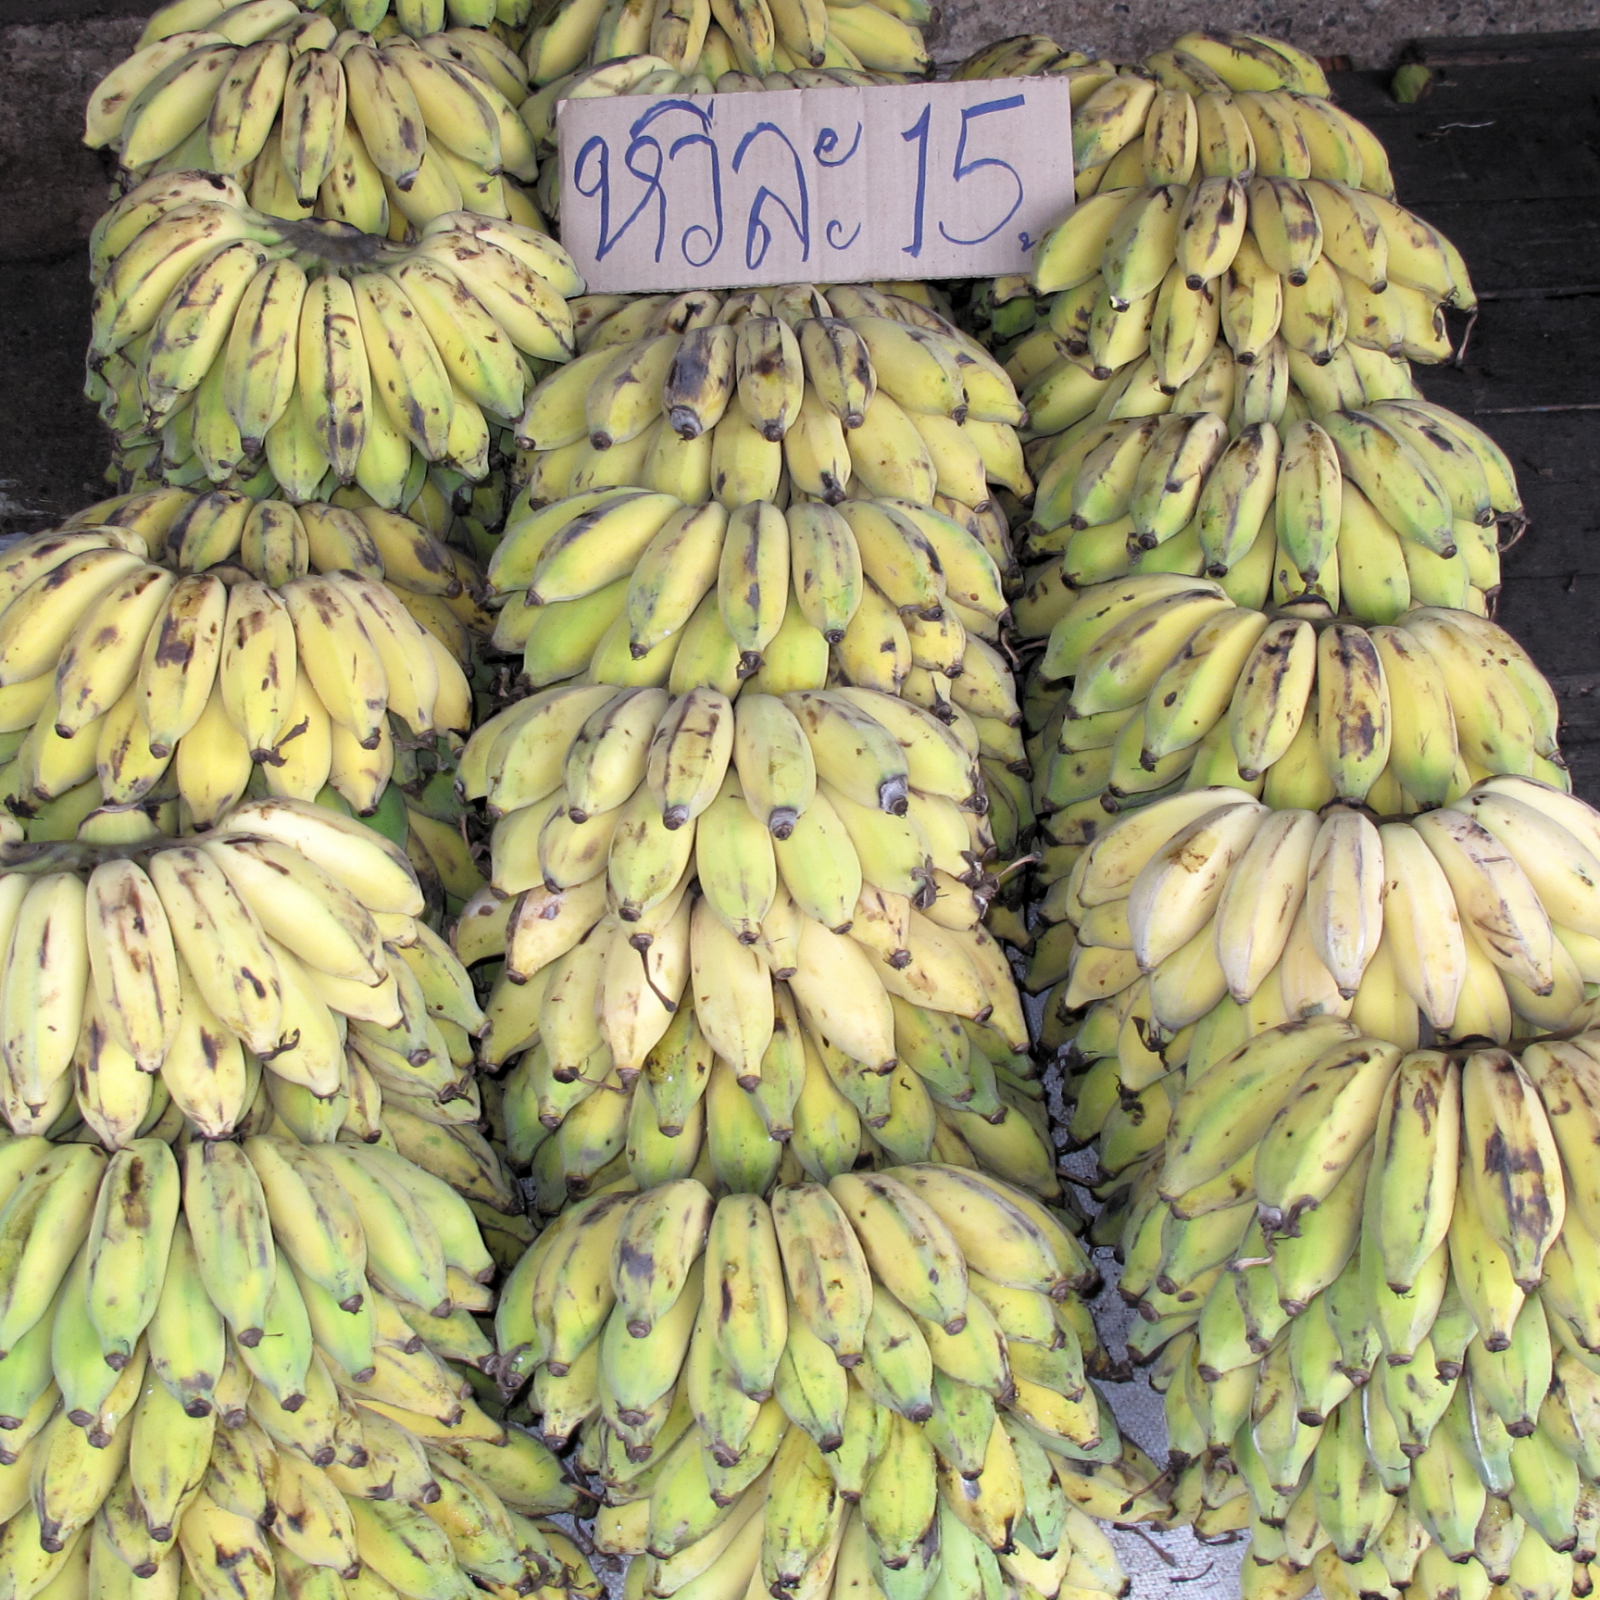 Banana stall